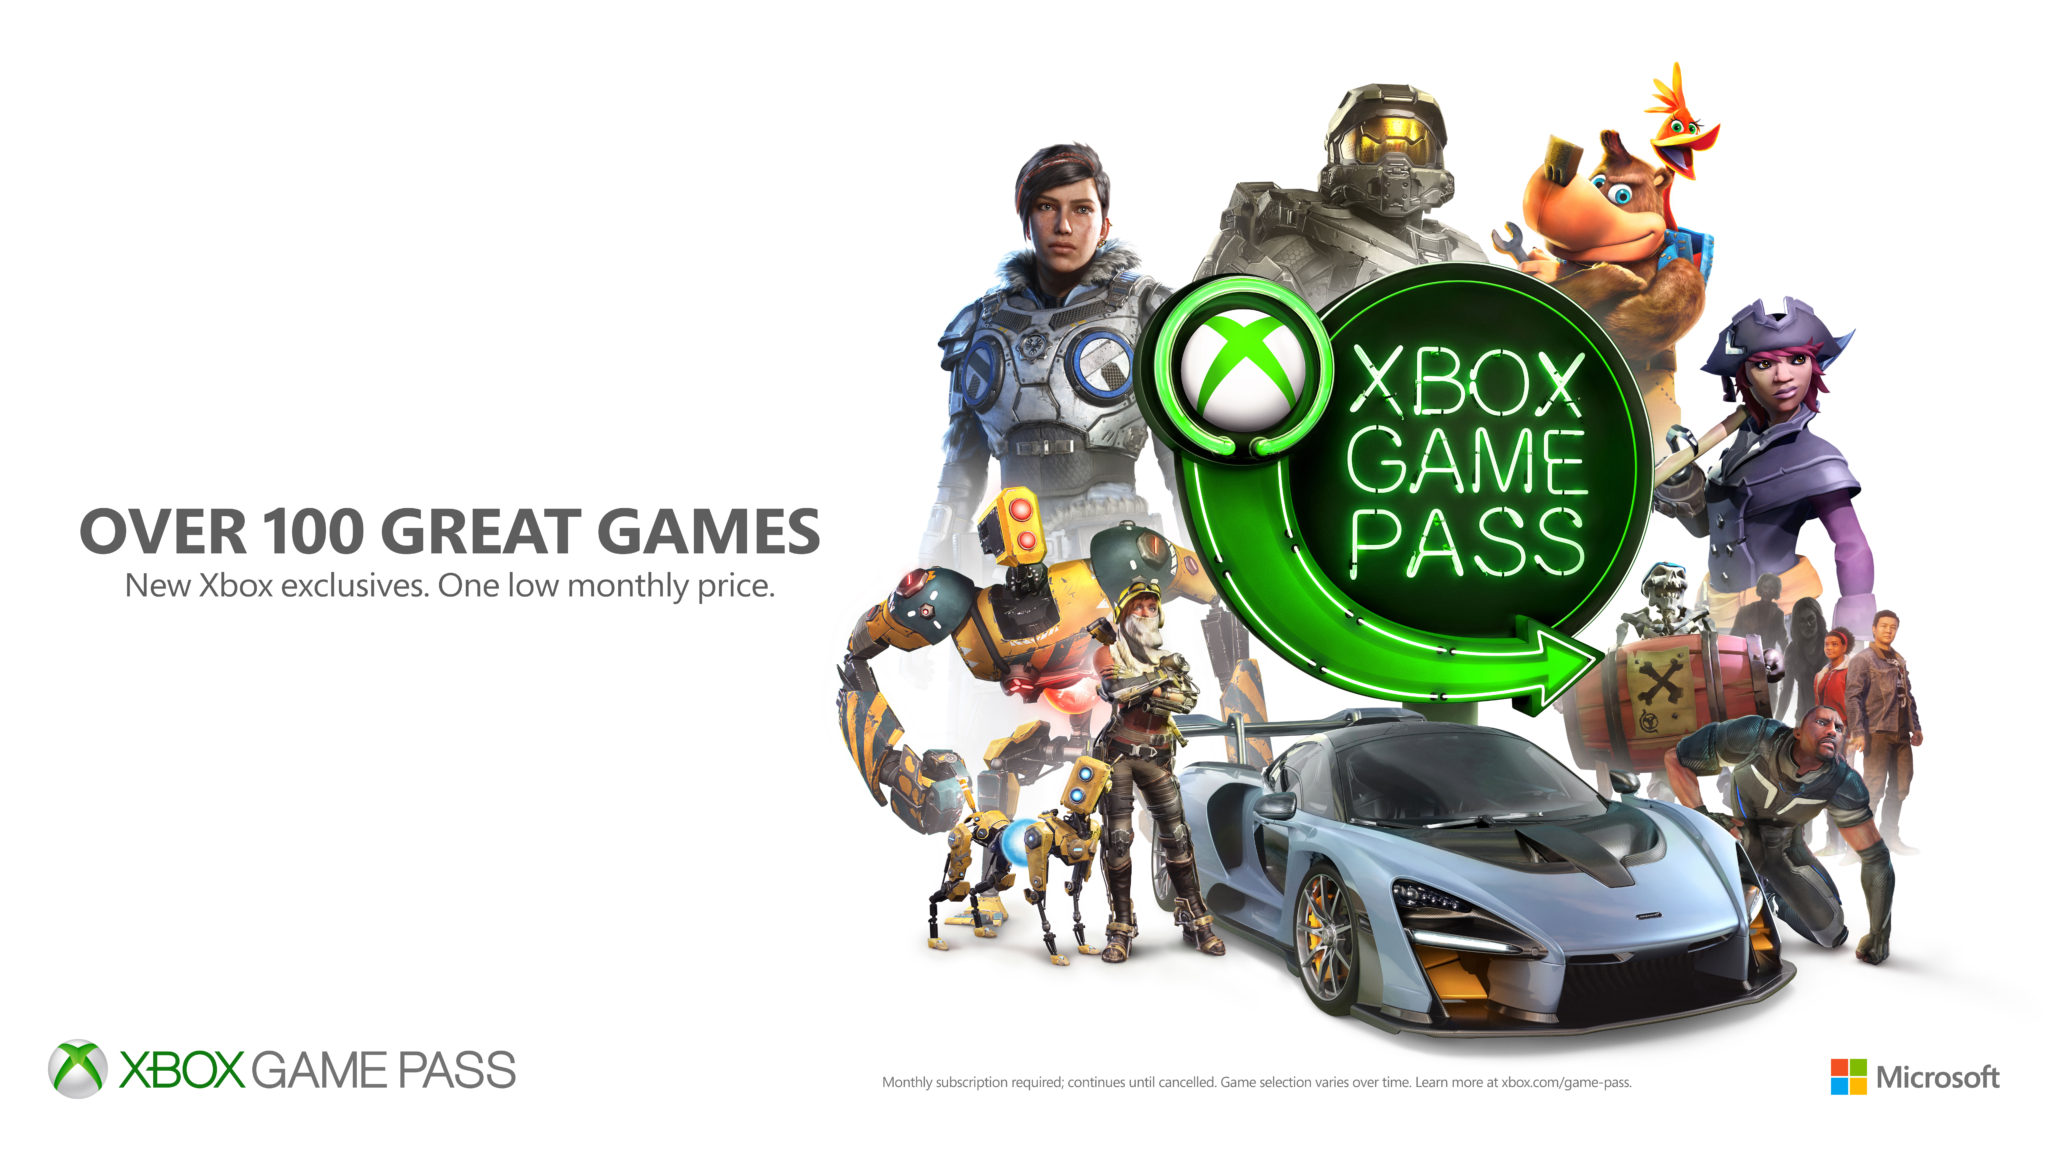 Xbox apk games. Game Pass. Xbox игры. Posters Xbox games. Xbox game Pass игры.